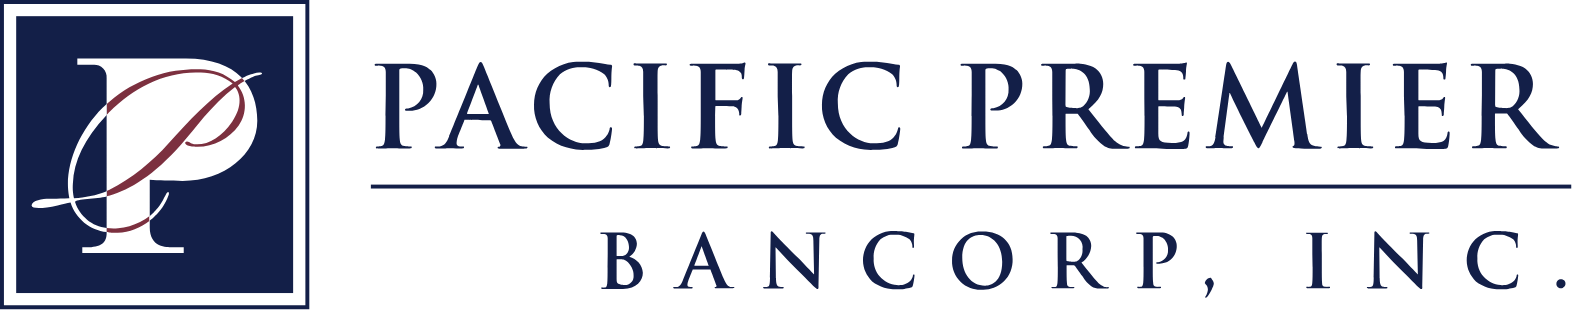 Pacific Premier Bancorp
 logo large (transparent PNG)